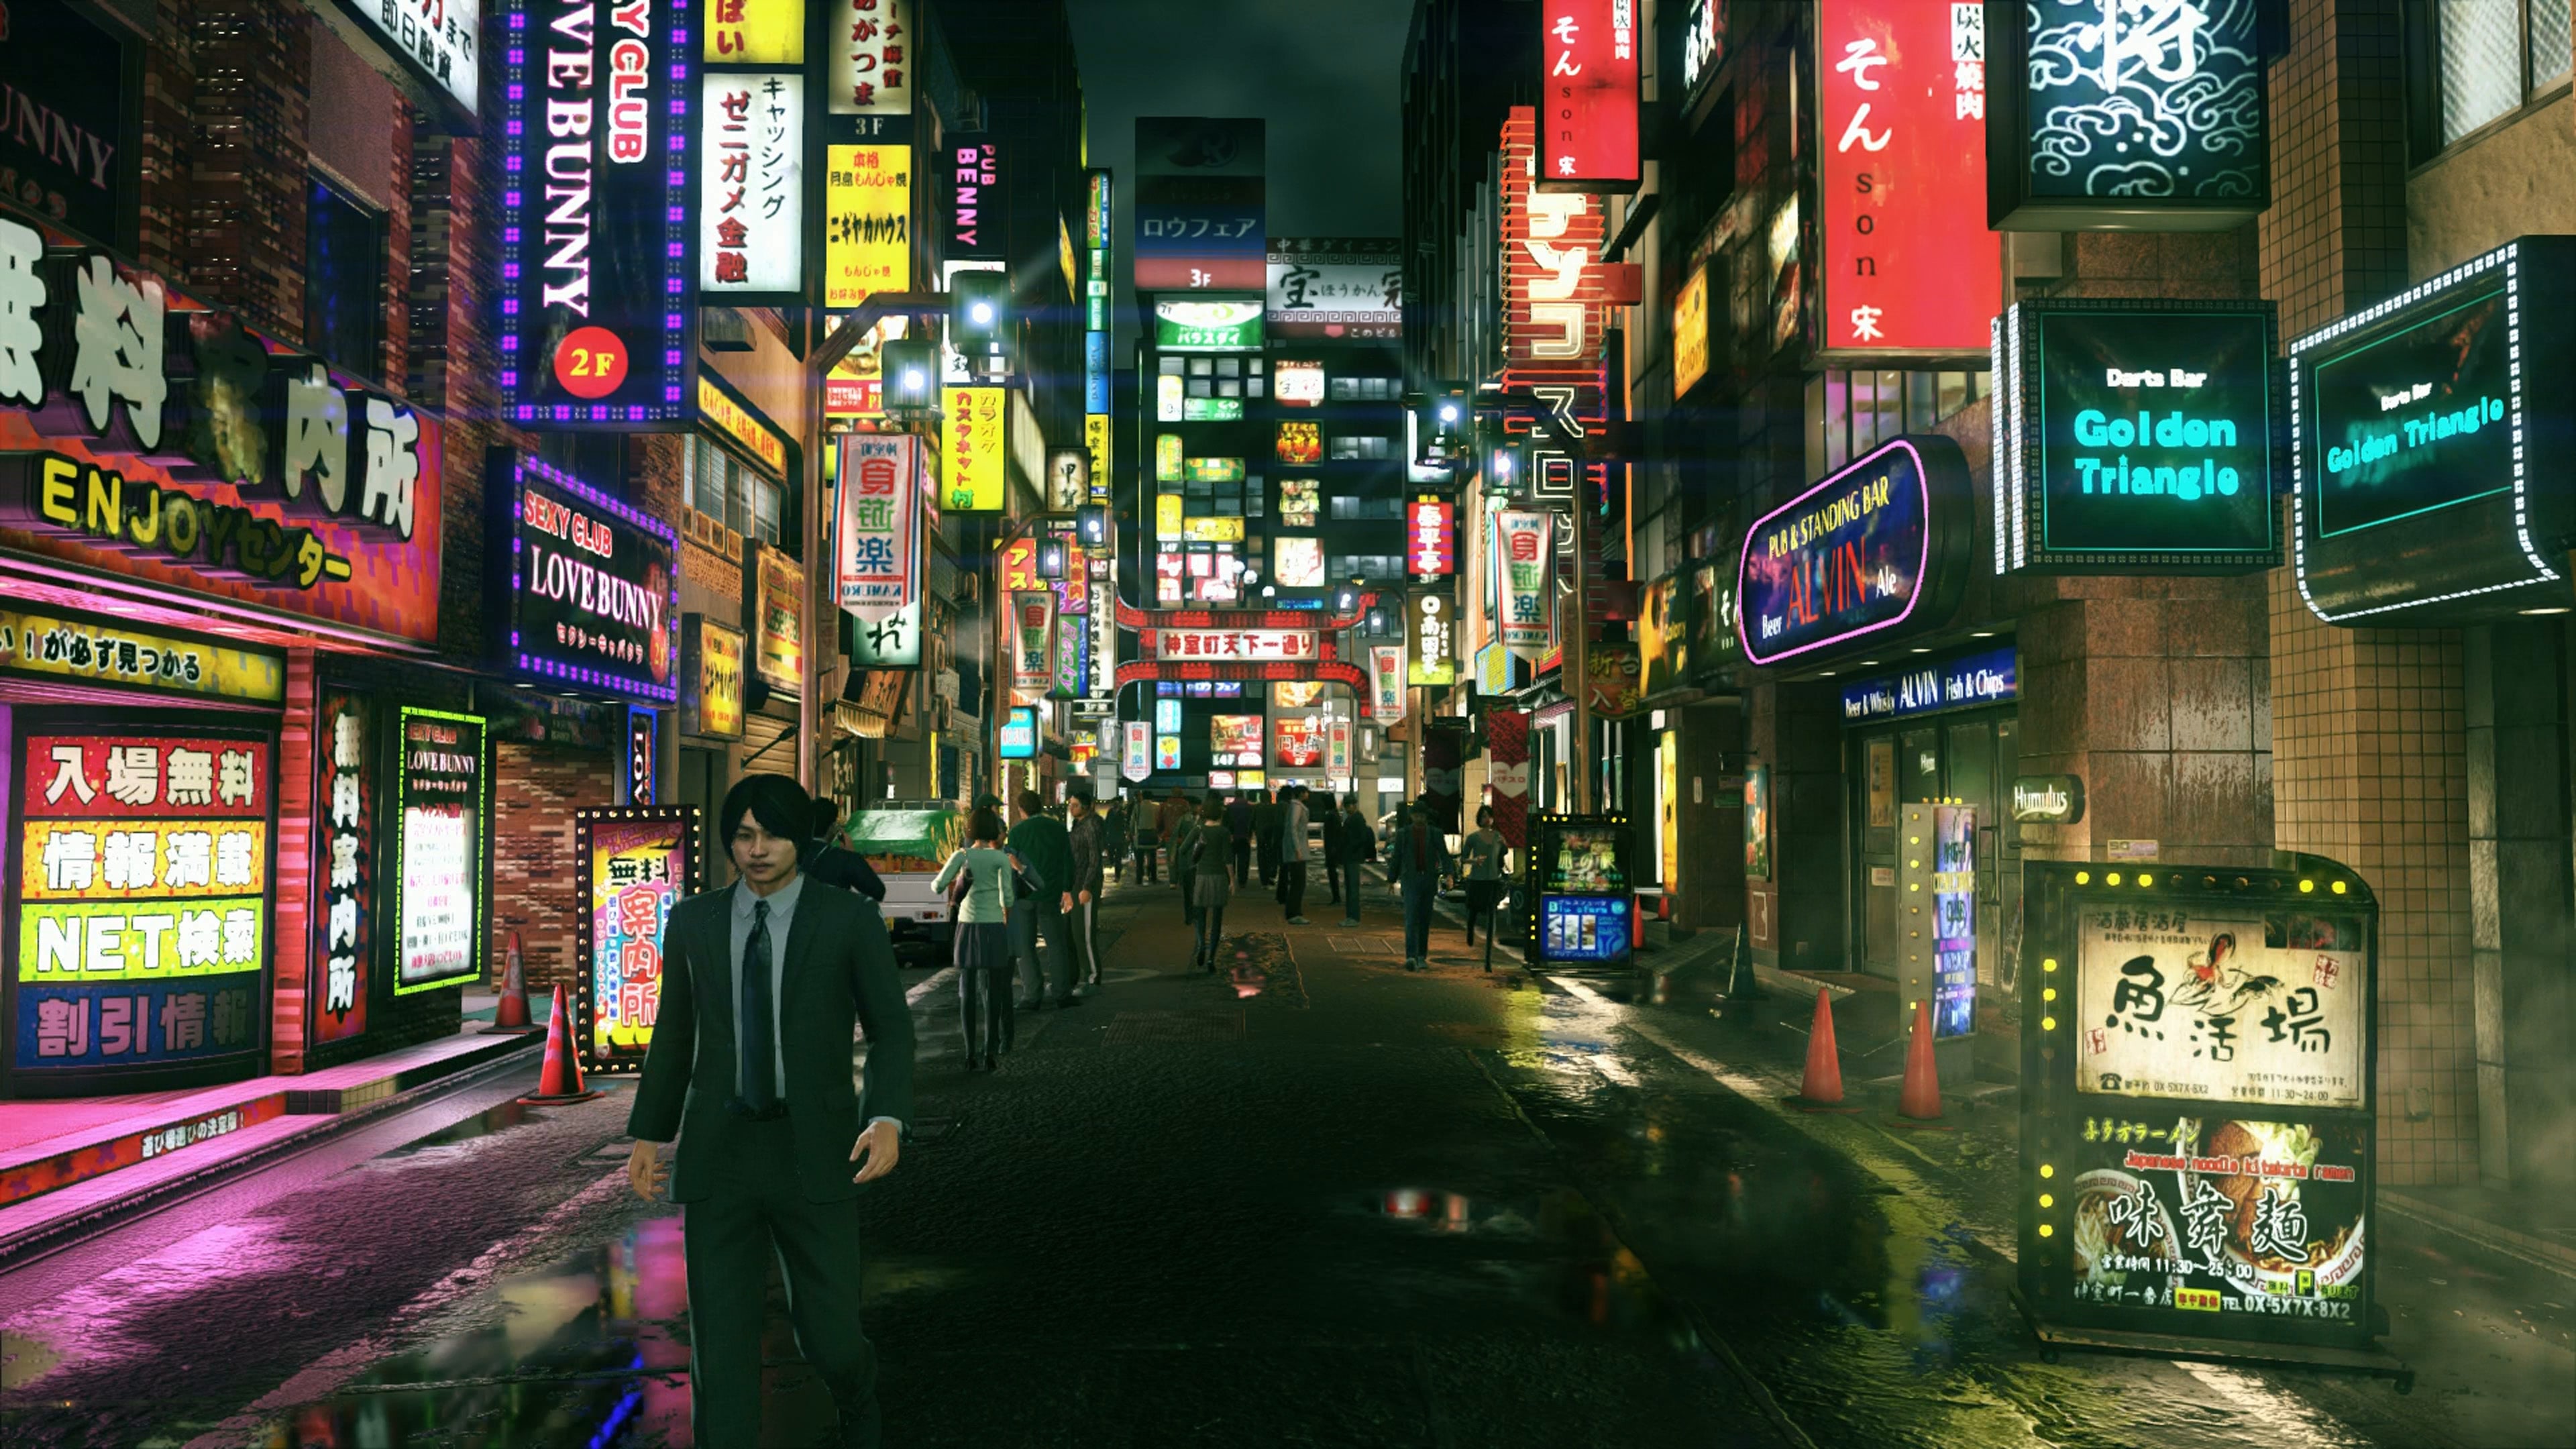 Jogo Yakuza Kiwami 2 PS4 Sega em Promoção é no Bondfaro